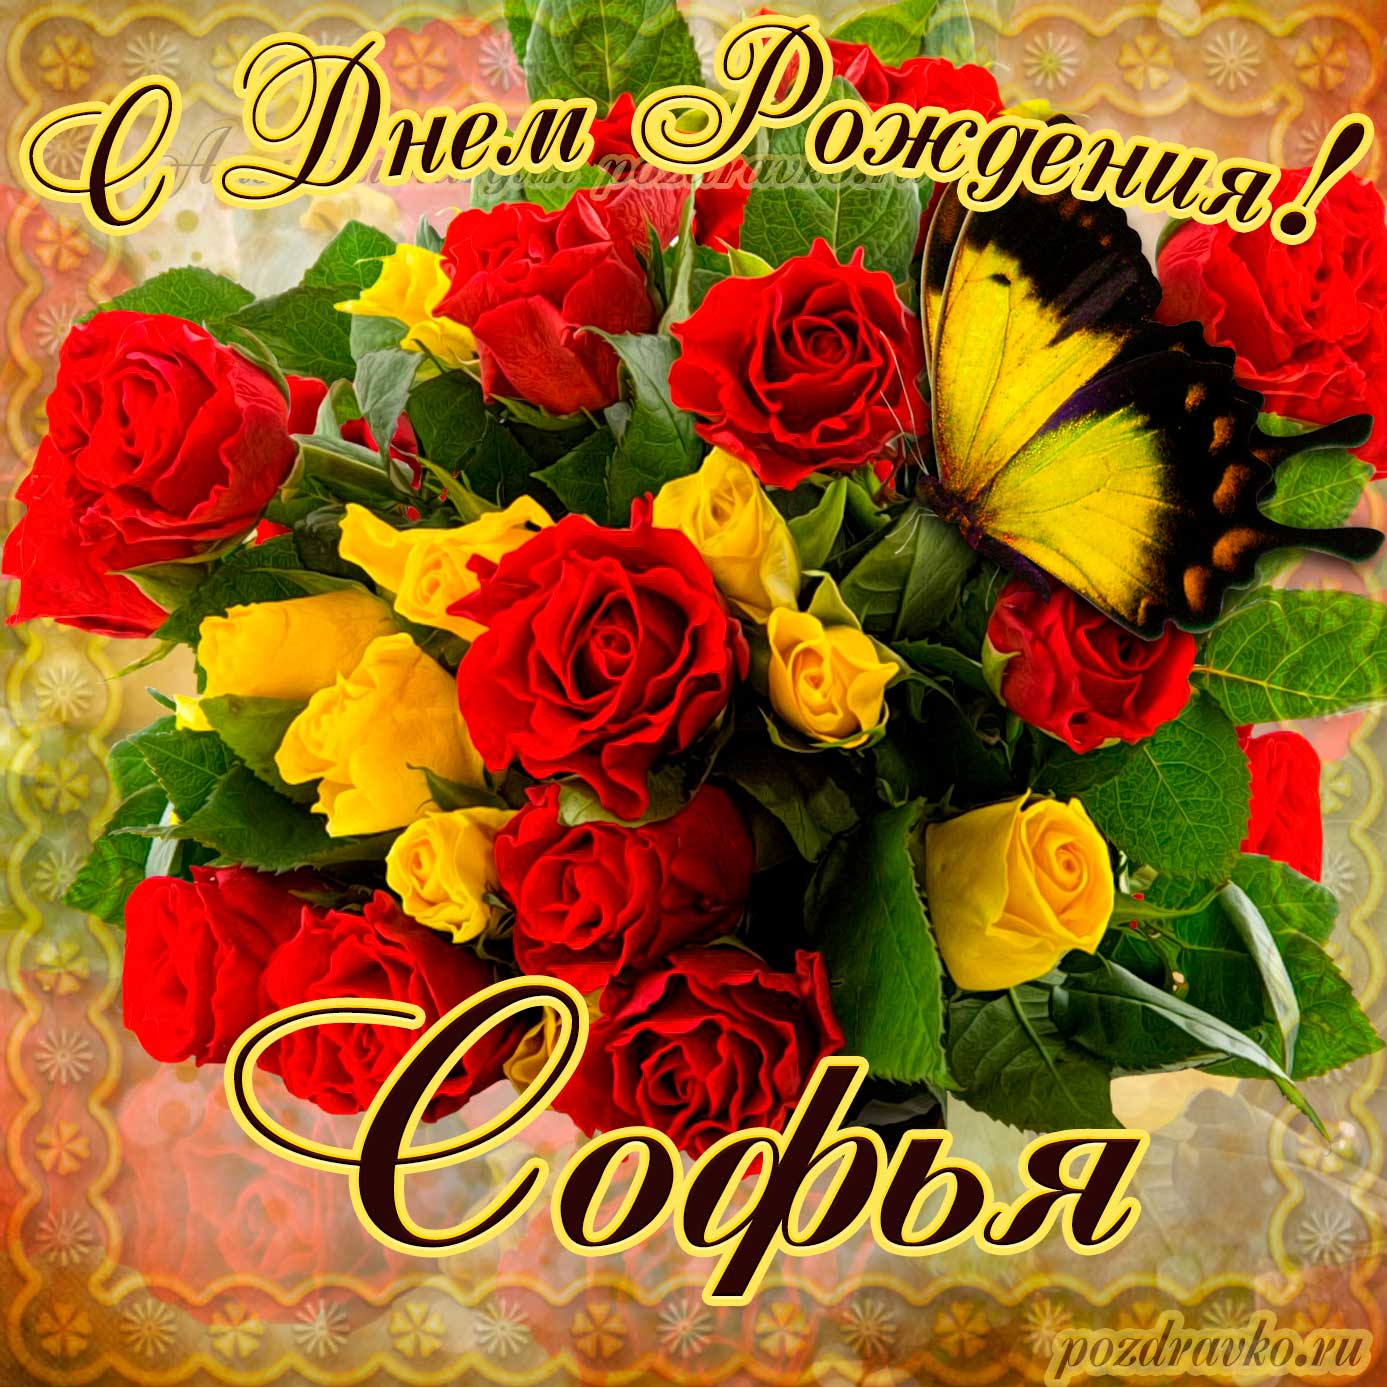 Открытка - на День Рождения Софье с букетом желтых и красных роз. Скачать бесплатно или отправить картинку.